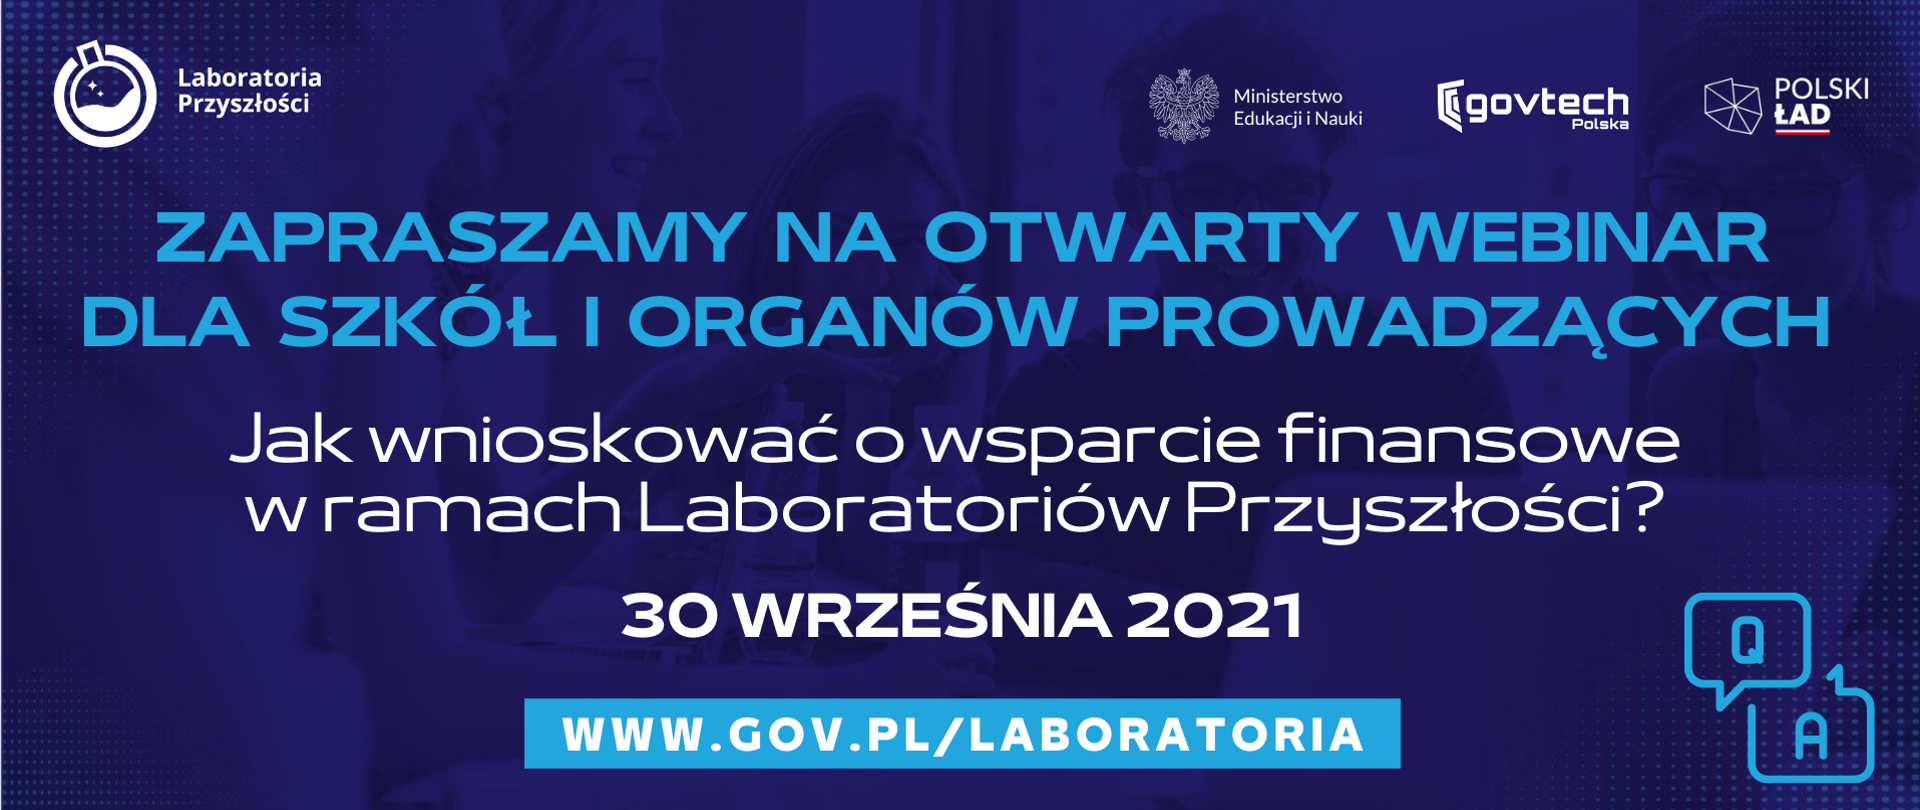 Zapraszamy na otwarty webinar dla szkół i organów prowadzących ,,Jak wnioskować o wsparcie finansowe w ramach Laboratoriów Przyszłości?"
30 września 2021
www.gov.pl/laboratoria